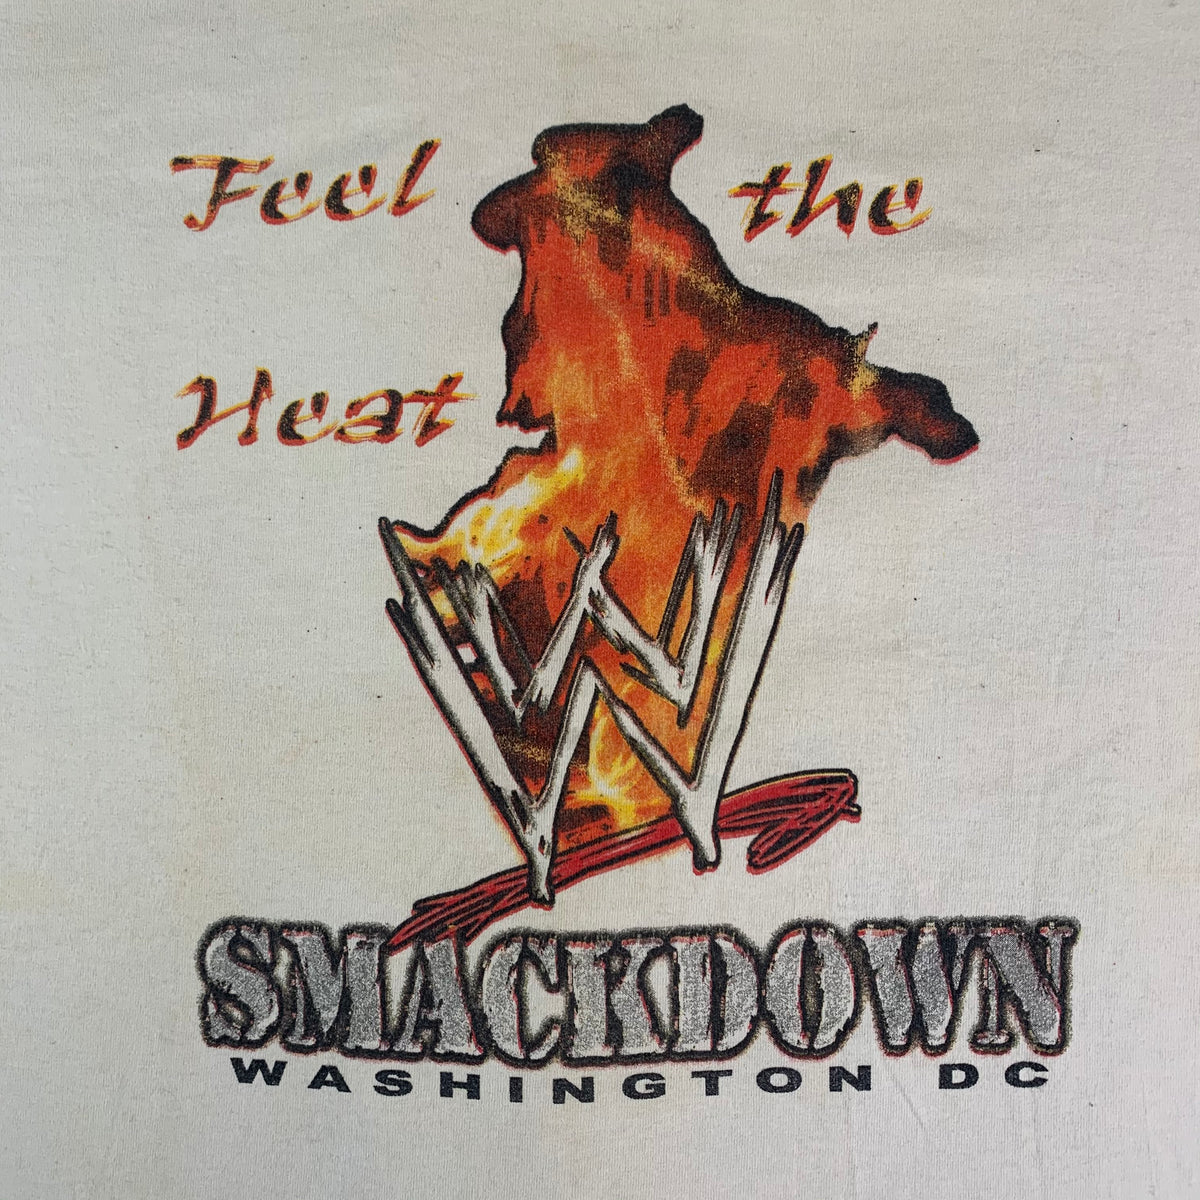 Vintage Smackdown Washington D.C. &quot;Feel The Heat&quot; T-Shirt